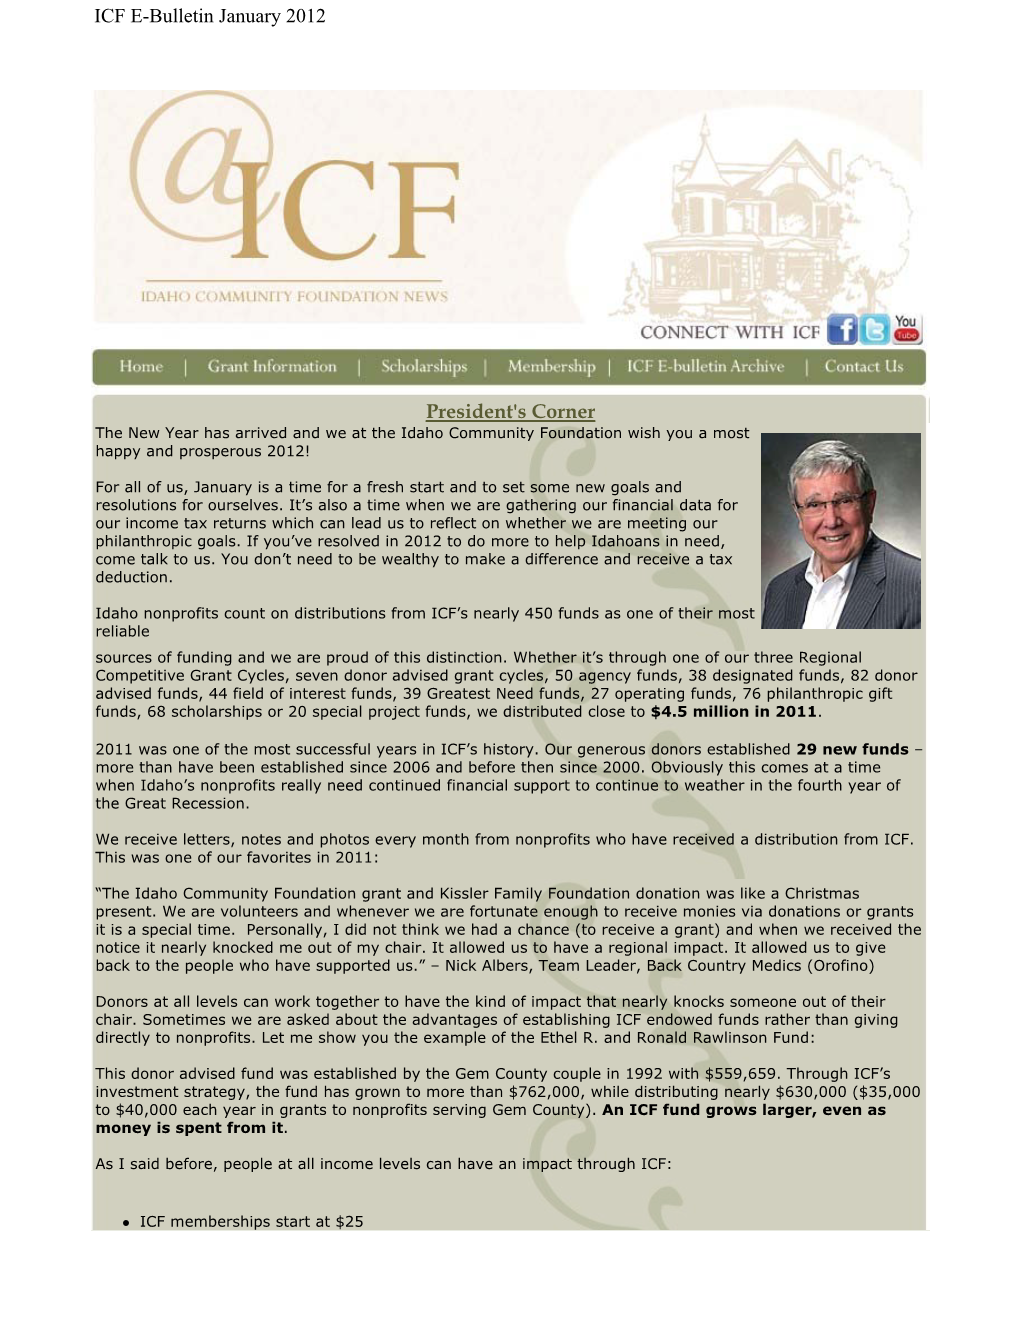 President's Corner ICF E-Bulletin January 2012